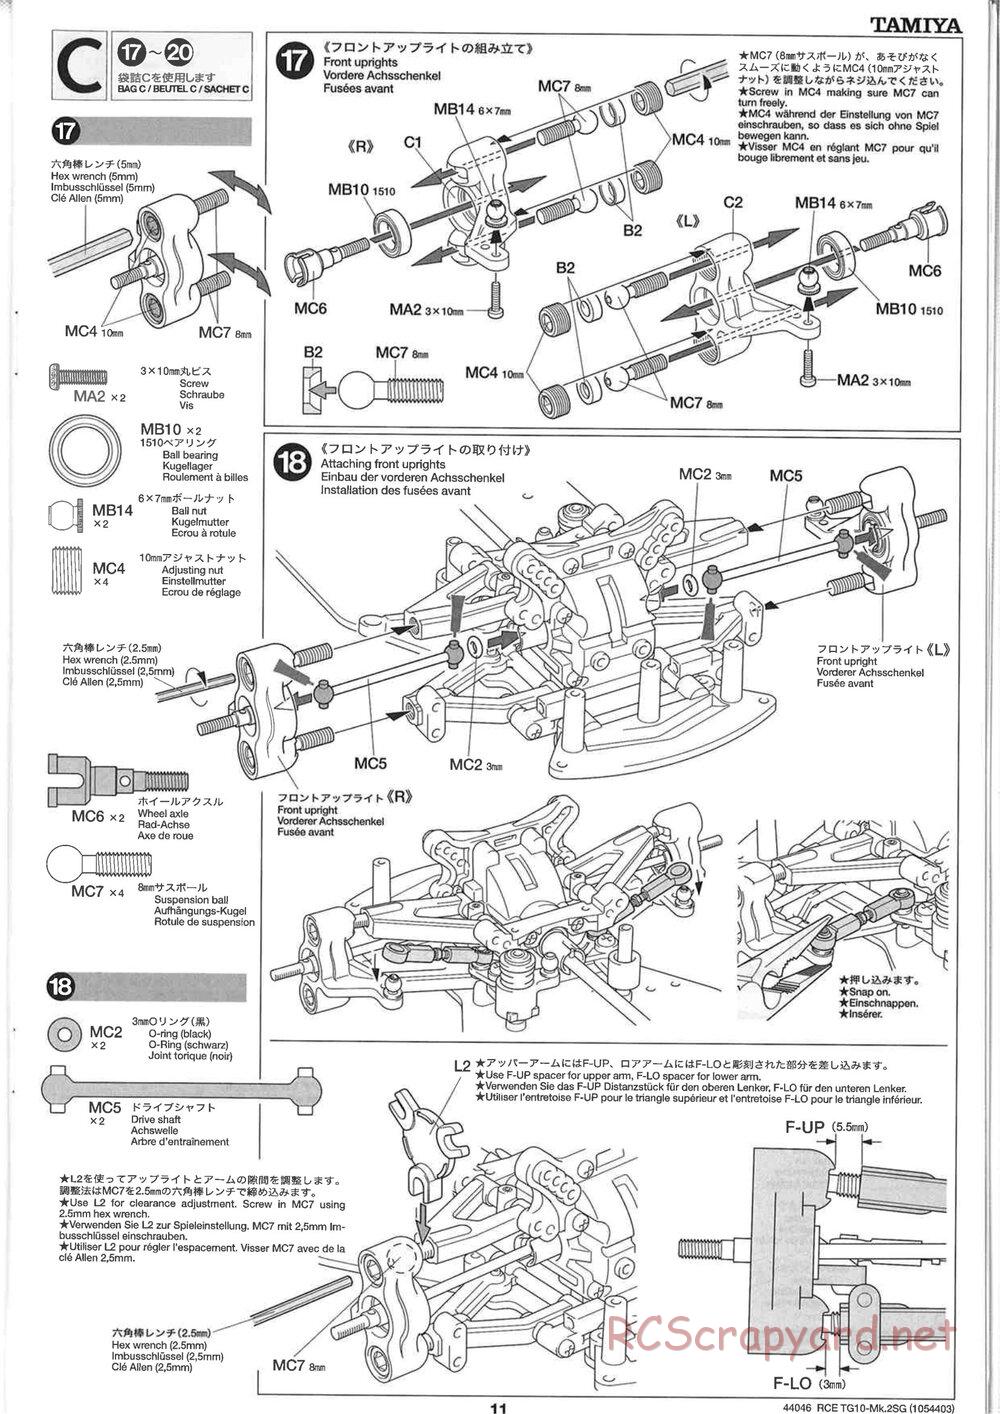 Tamiya - TG10 Mk.2SG Chassis - Manual - Page 11